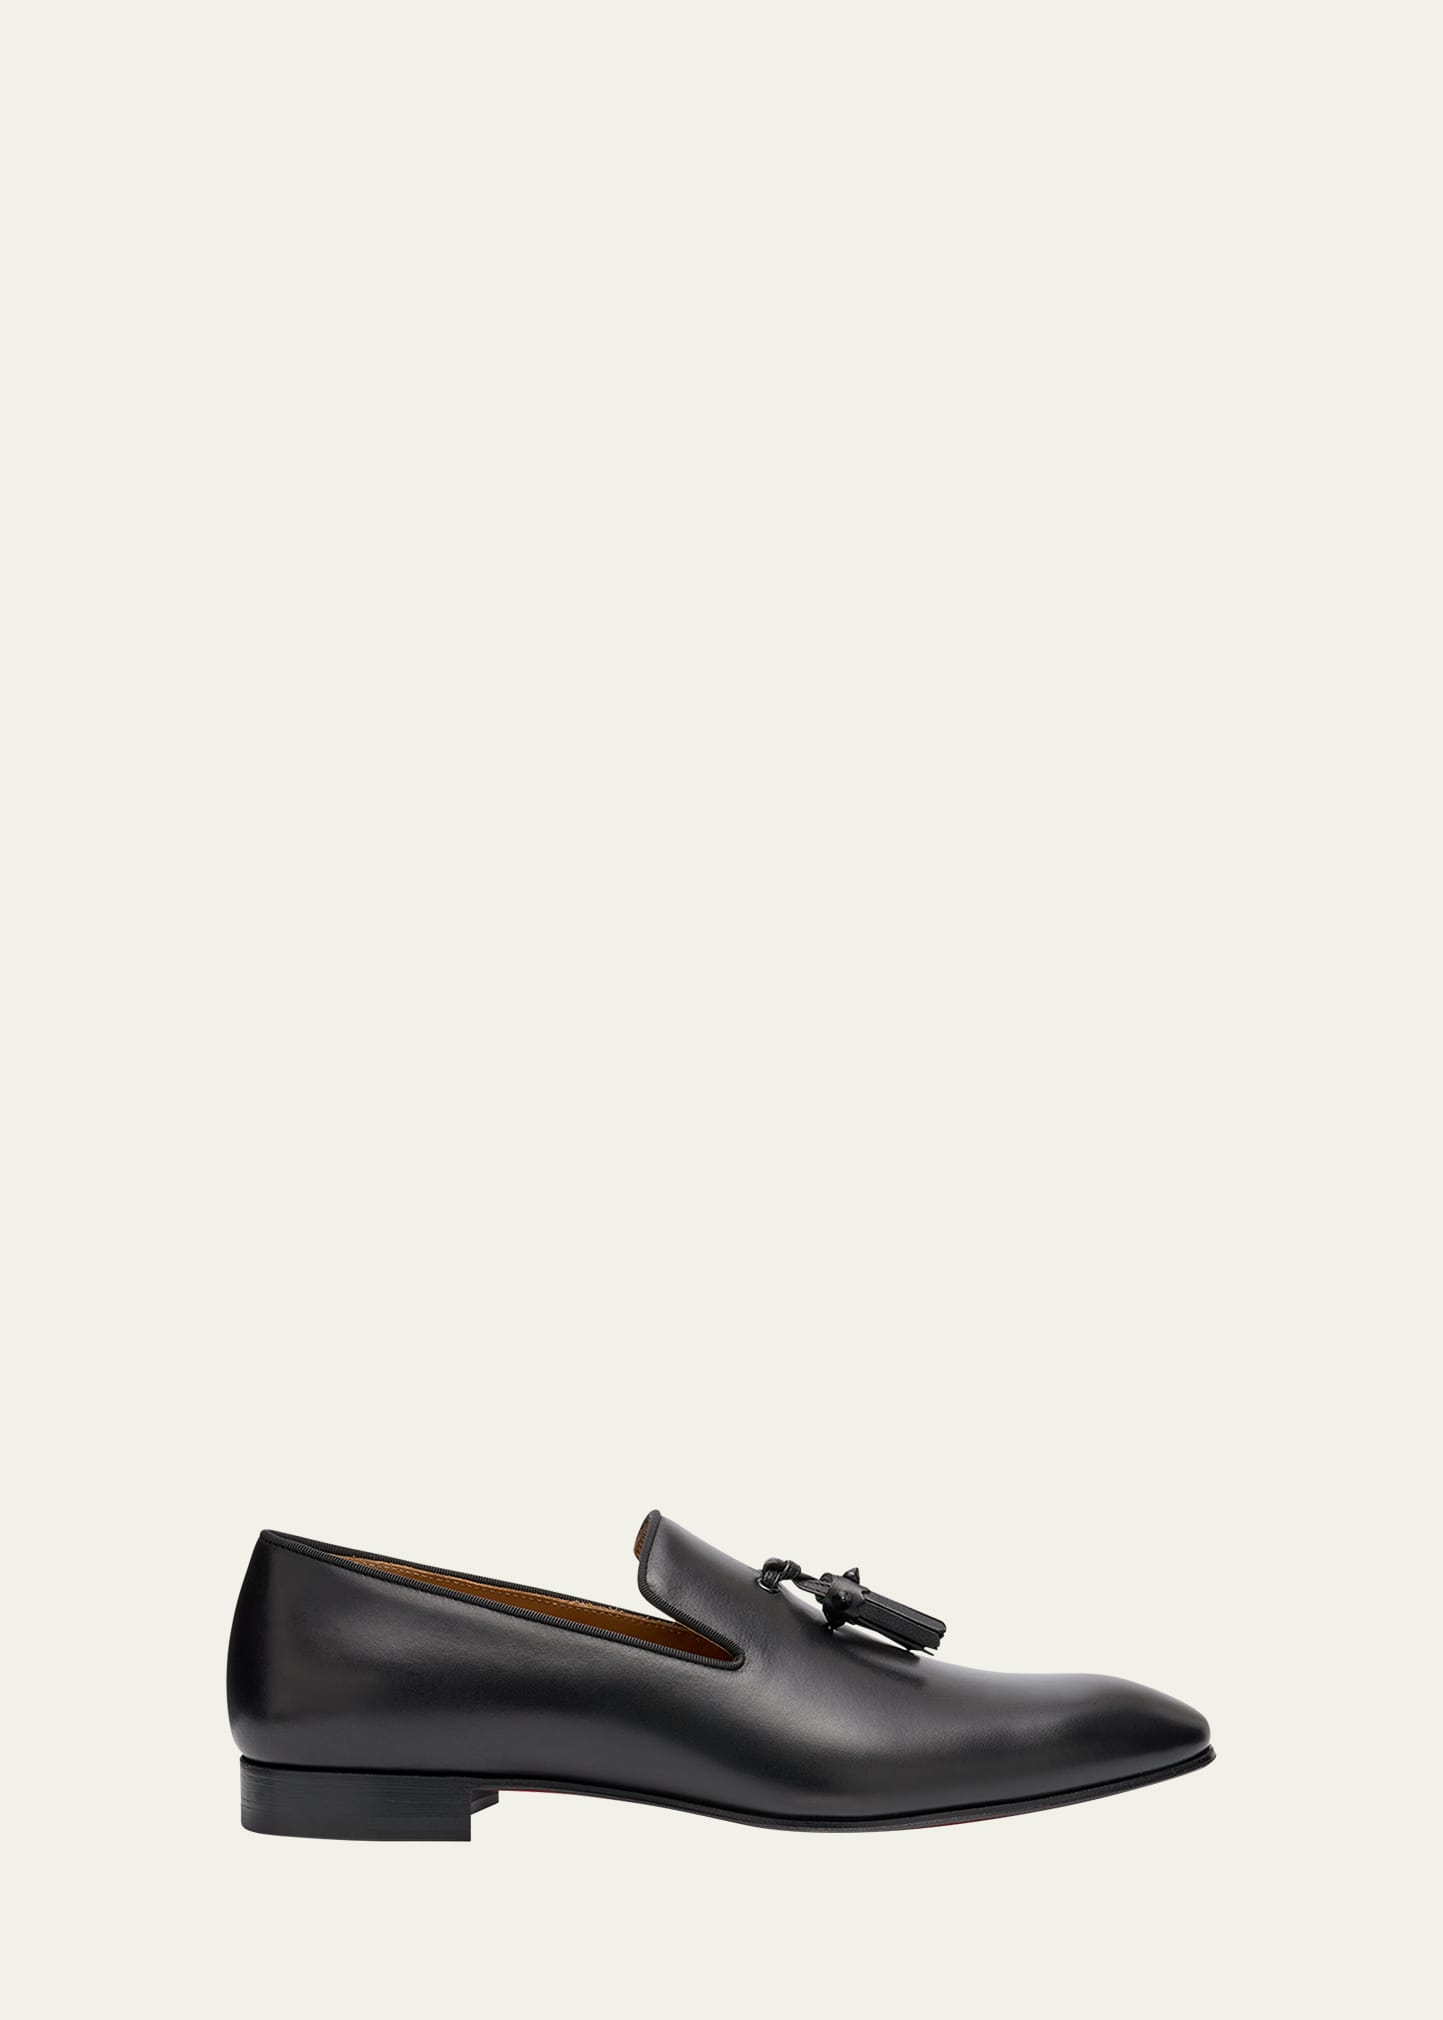 Shop Christian Louboutin Men's Dandelion Tassel Leather Loafers In Black